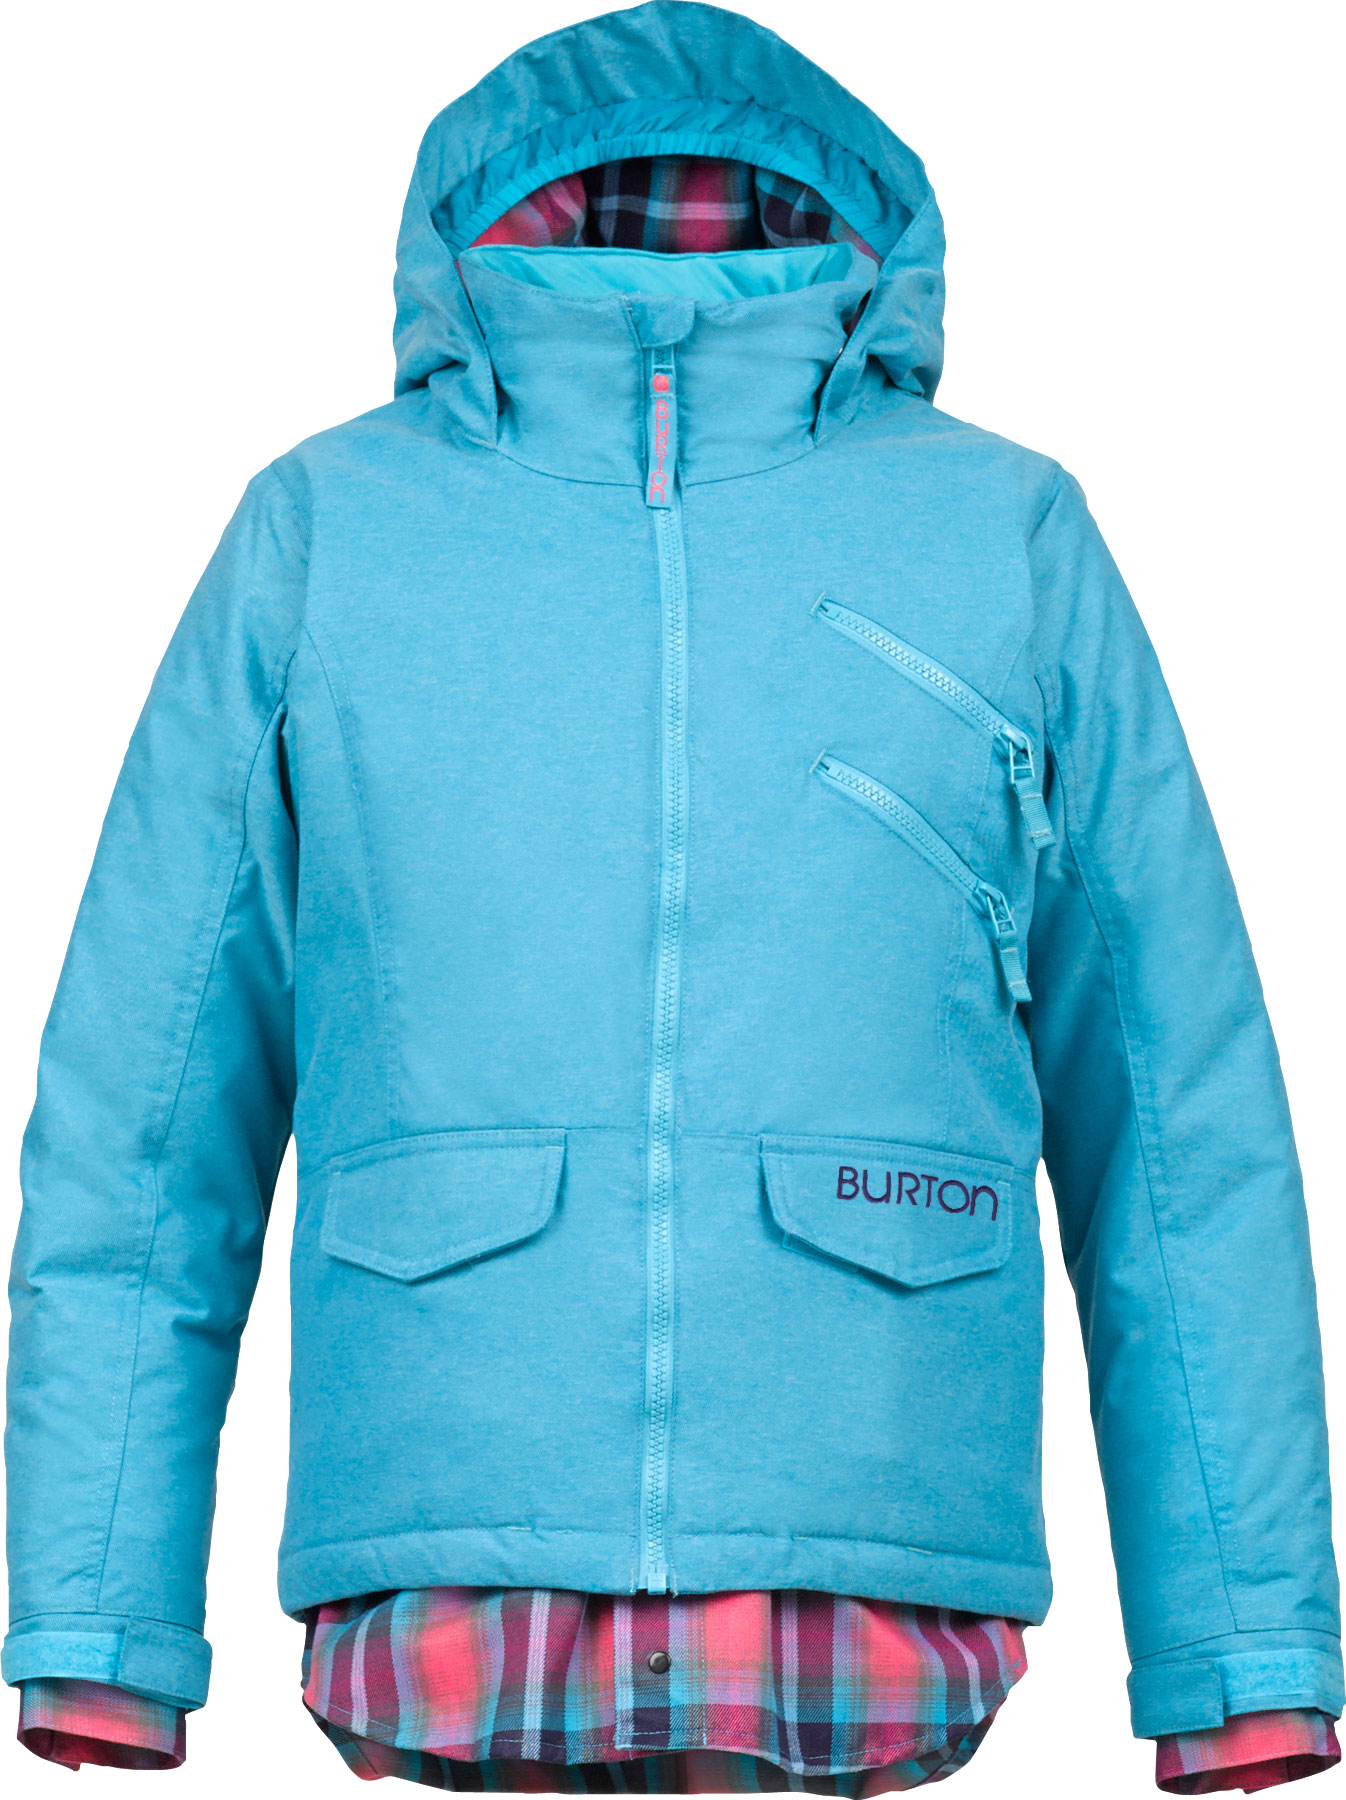 Burton Girls Venture Snowboard Jacket 2014 | Mount Everest